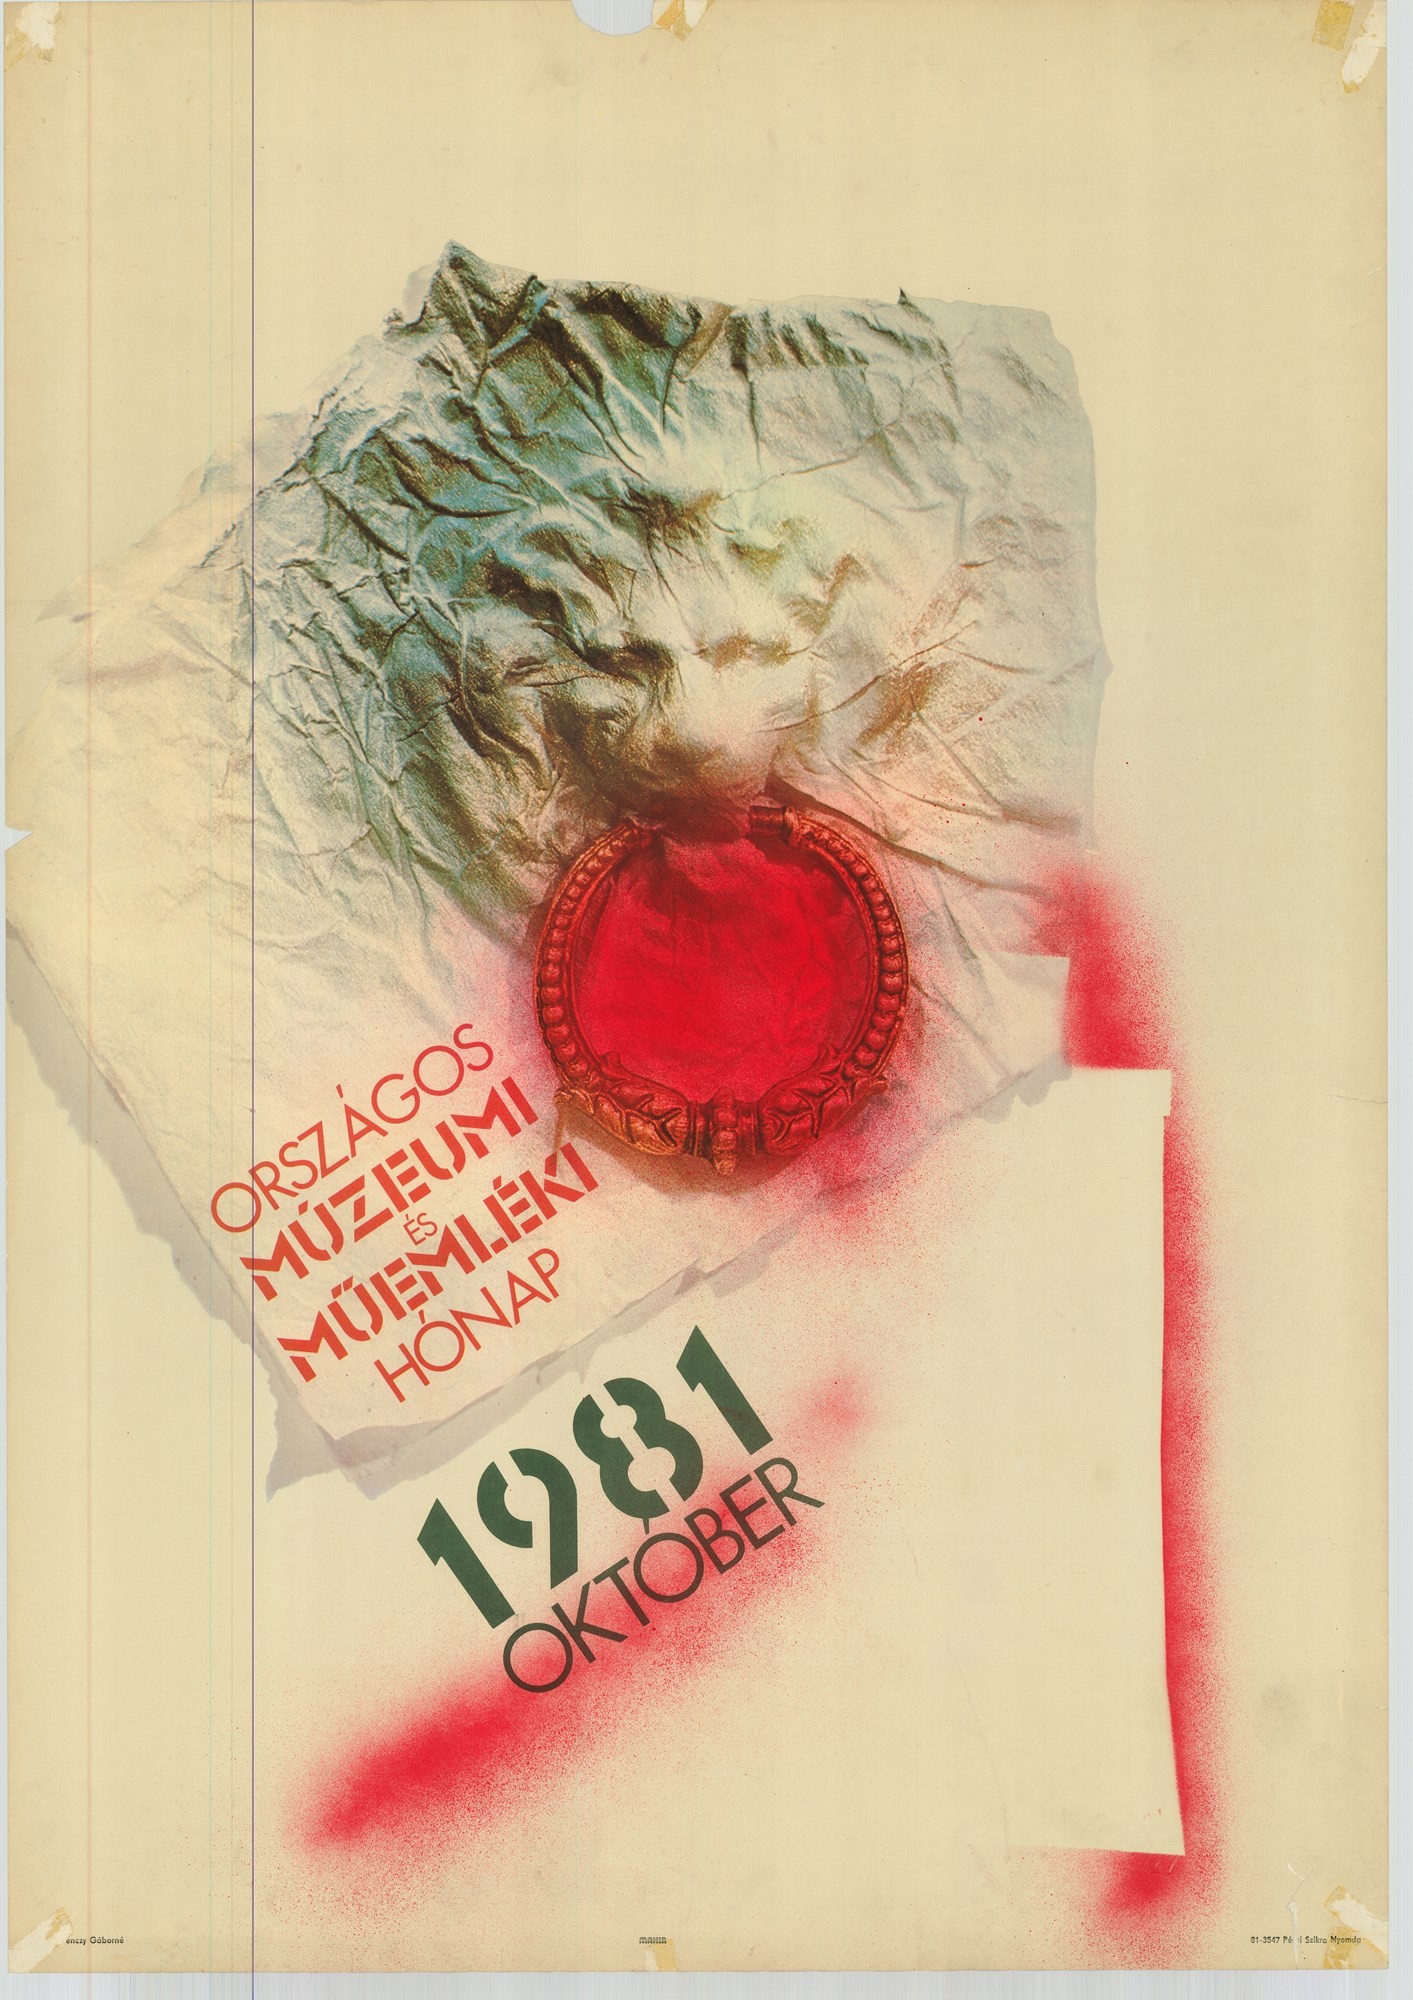 Plakát - Országos Múzeumi és Műemléki hónap, 1981 (Postamúzeum CC BY-NC-SA)